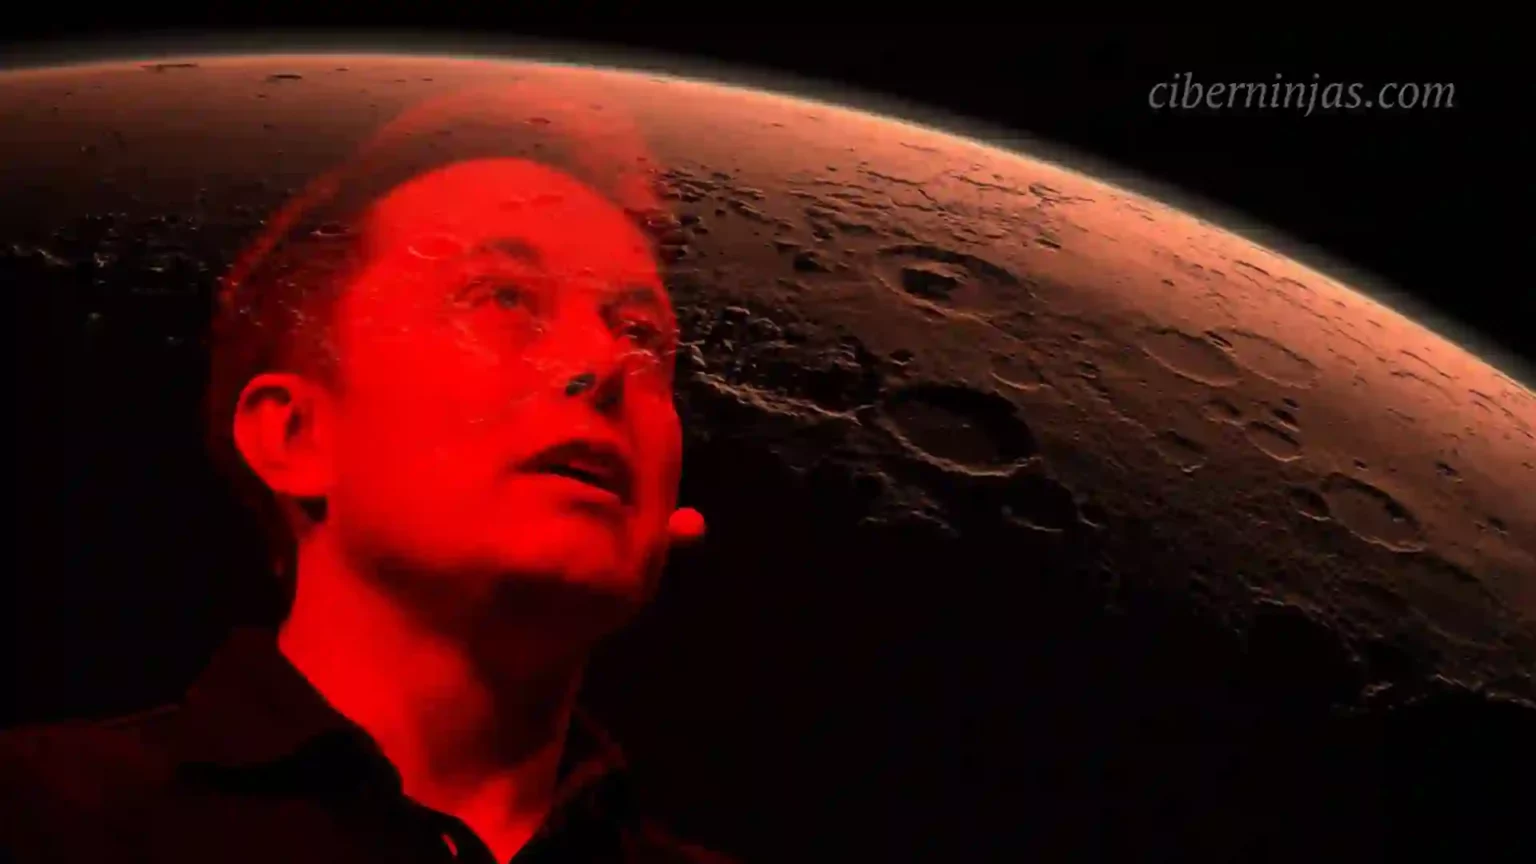 Entra a los Calabozos Pesadilla de Diablo 4 junto a Elon Musk